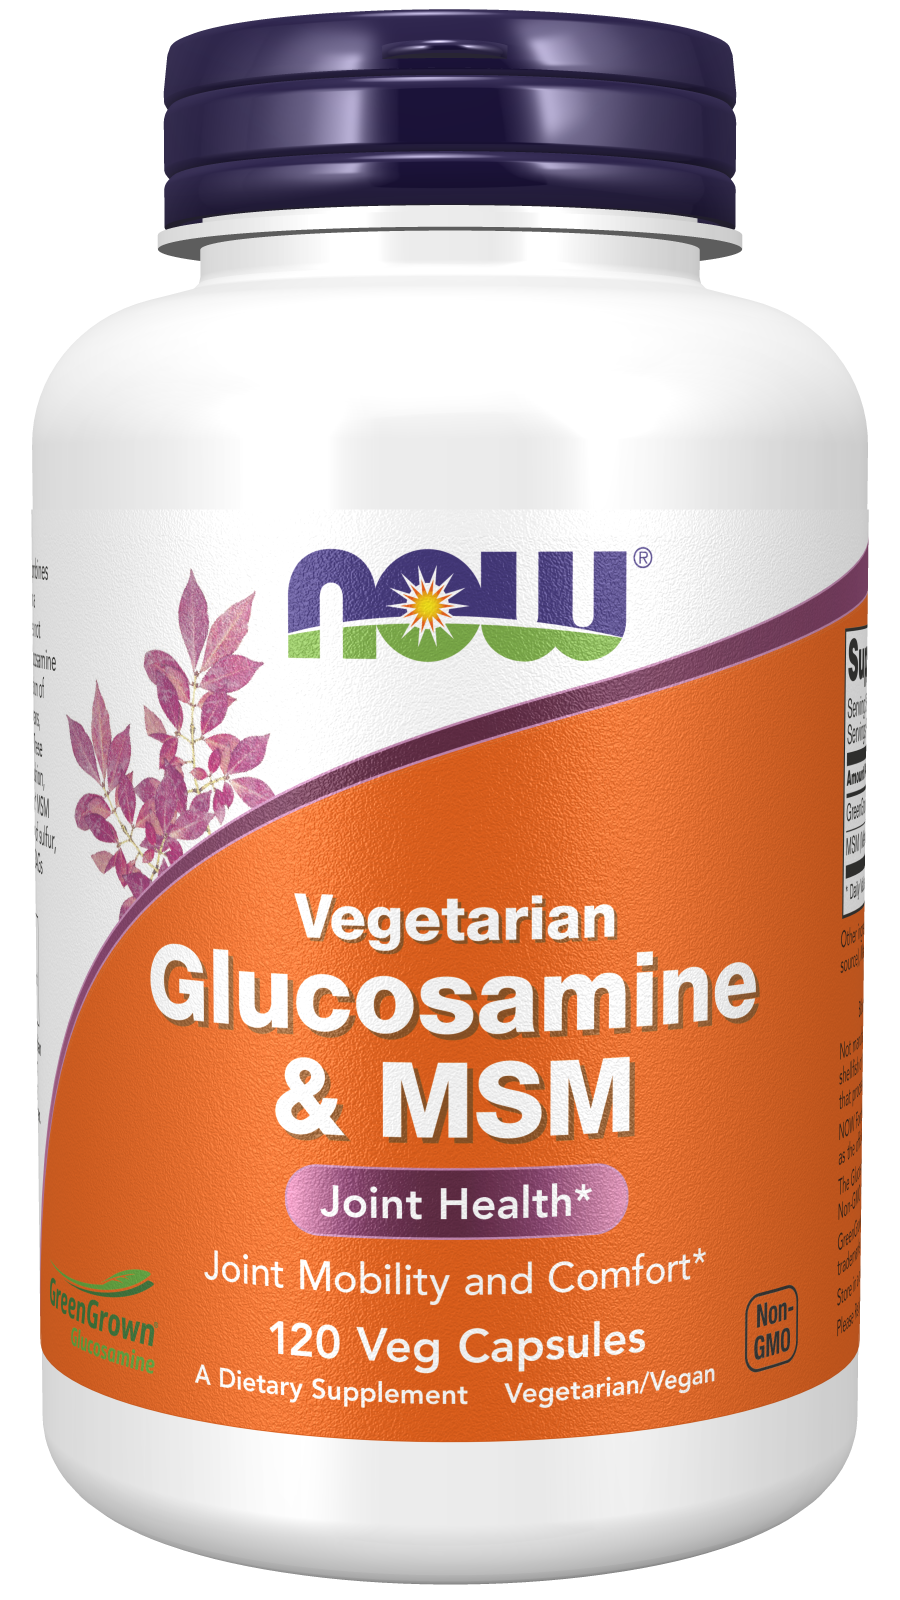 Glucosamine & MSM (Vegetarian) - 120 Veg Capsules Bottle Front